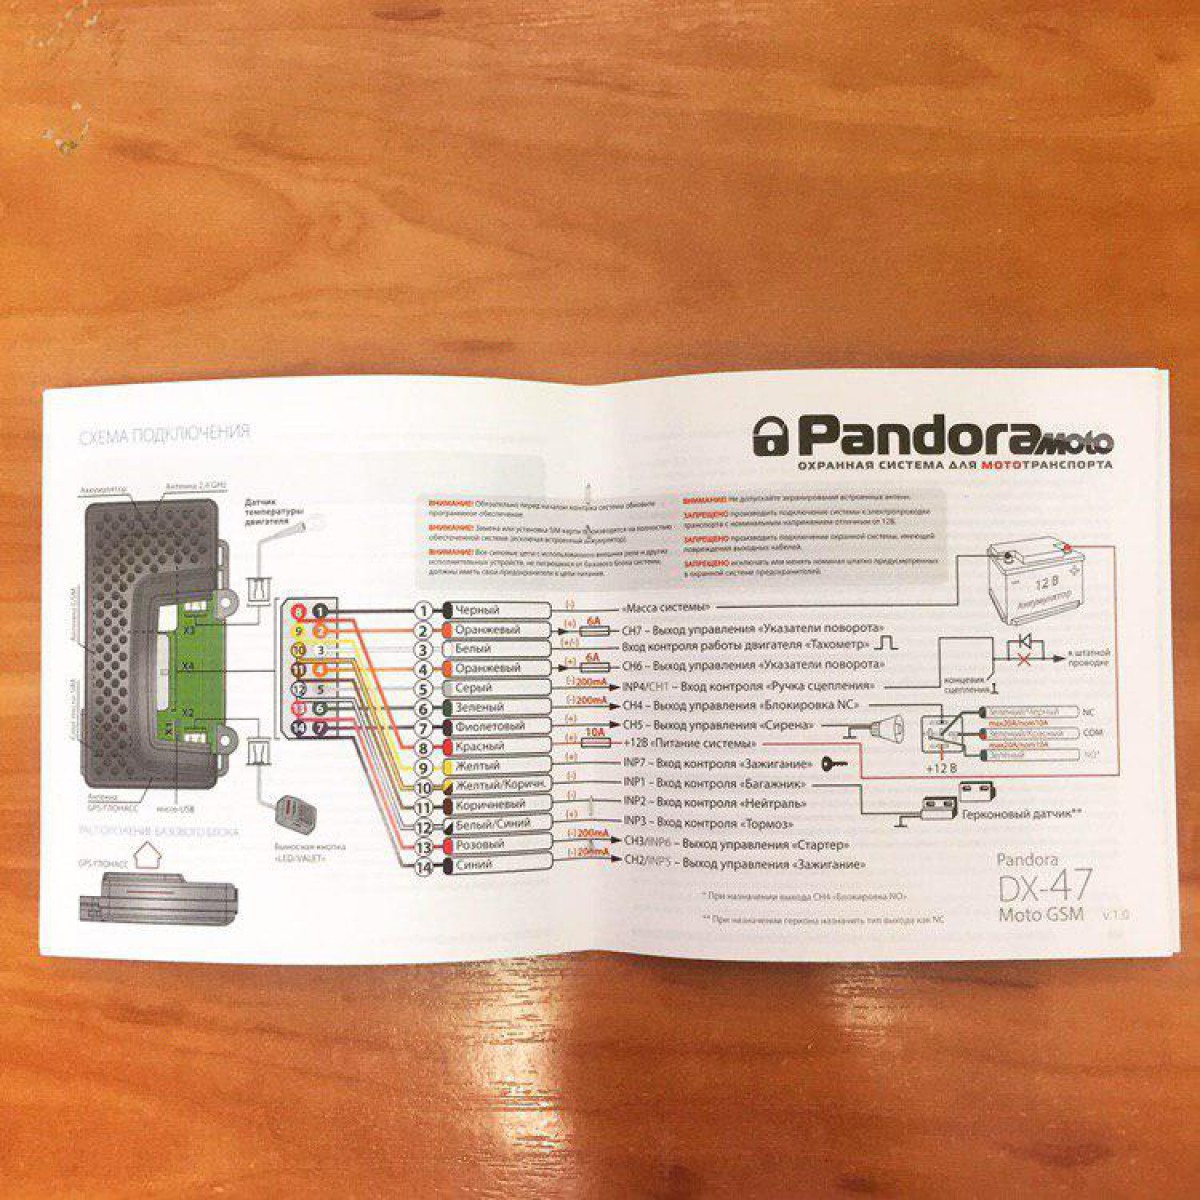 Pandora DX-47 Smart Moto